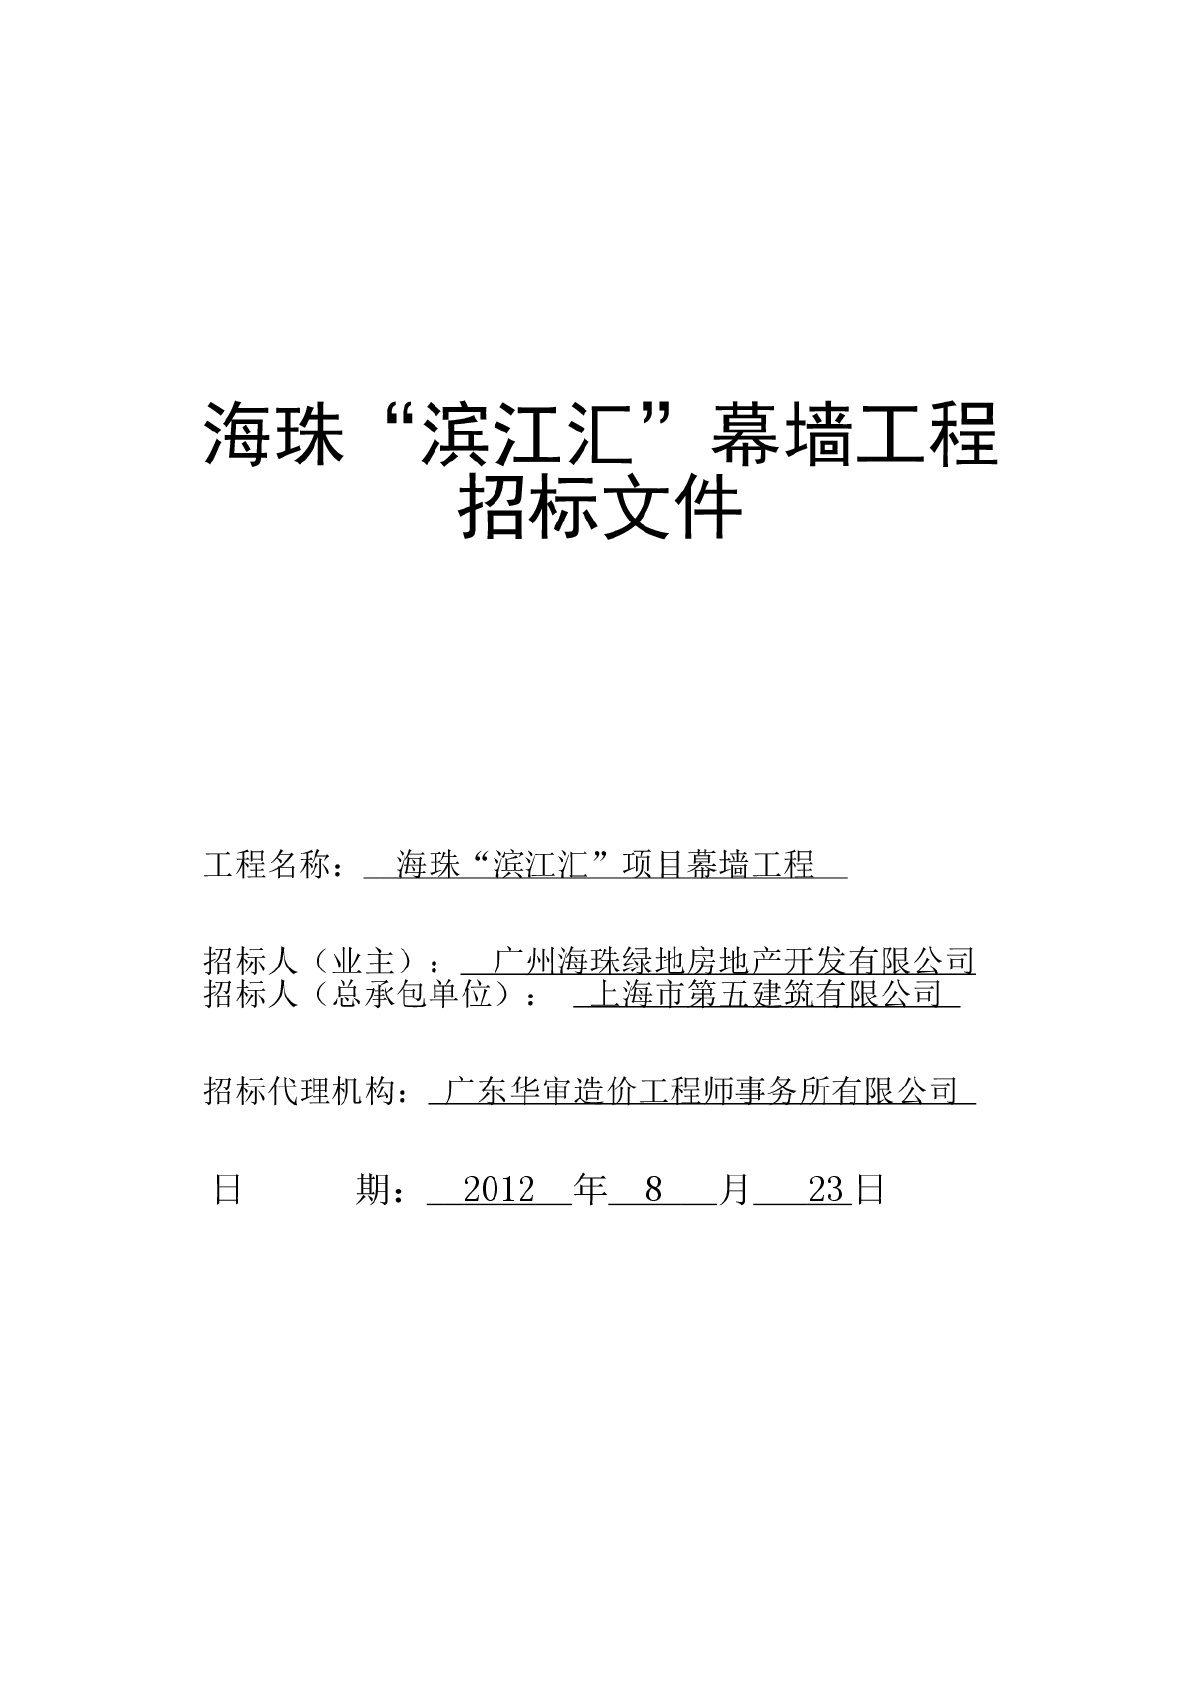 【广东】绿地海珠“滨江汇”幕墙工程招标文件